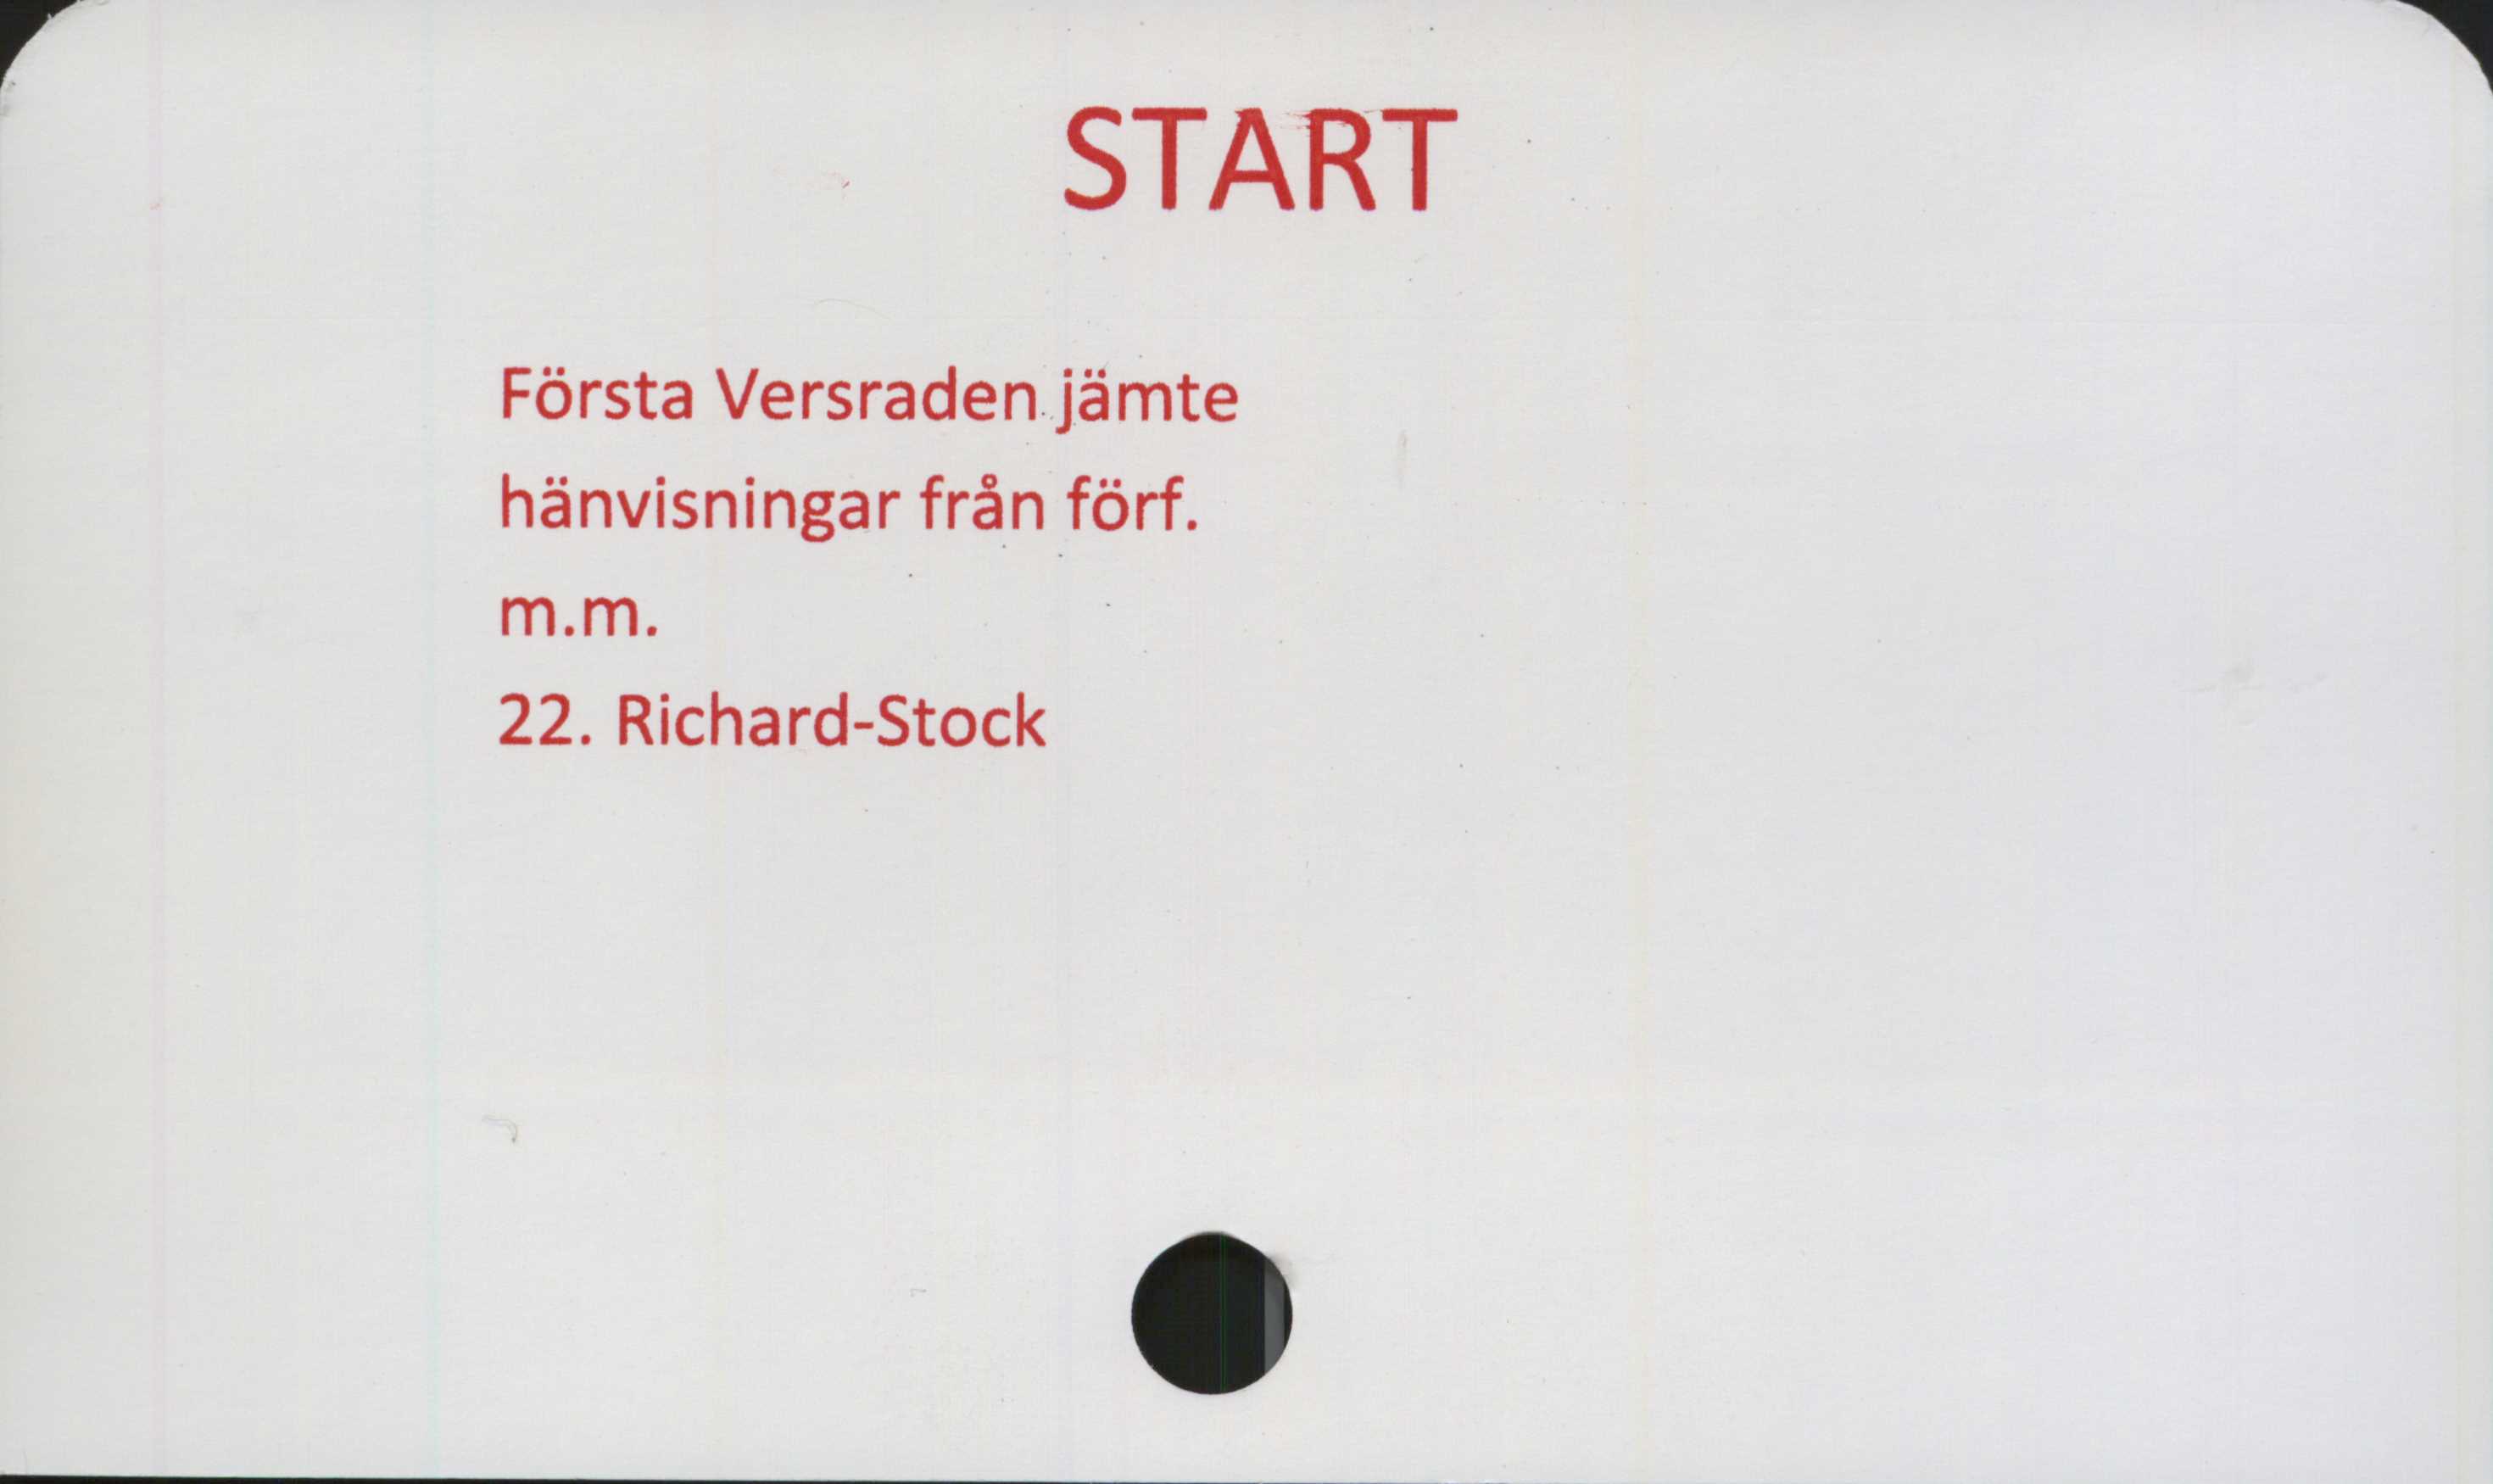  ﻿START

Första Versraden jämte
hänvisningar från förf.
m.m.

22. Richard-Stock